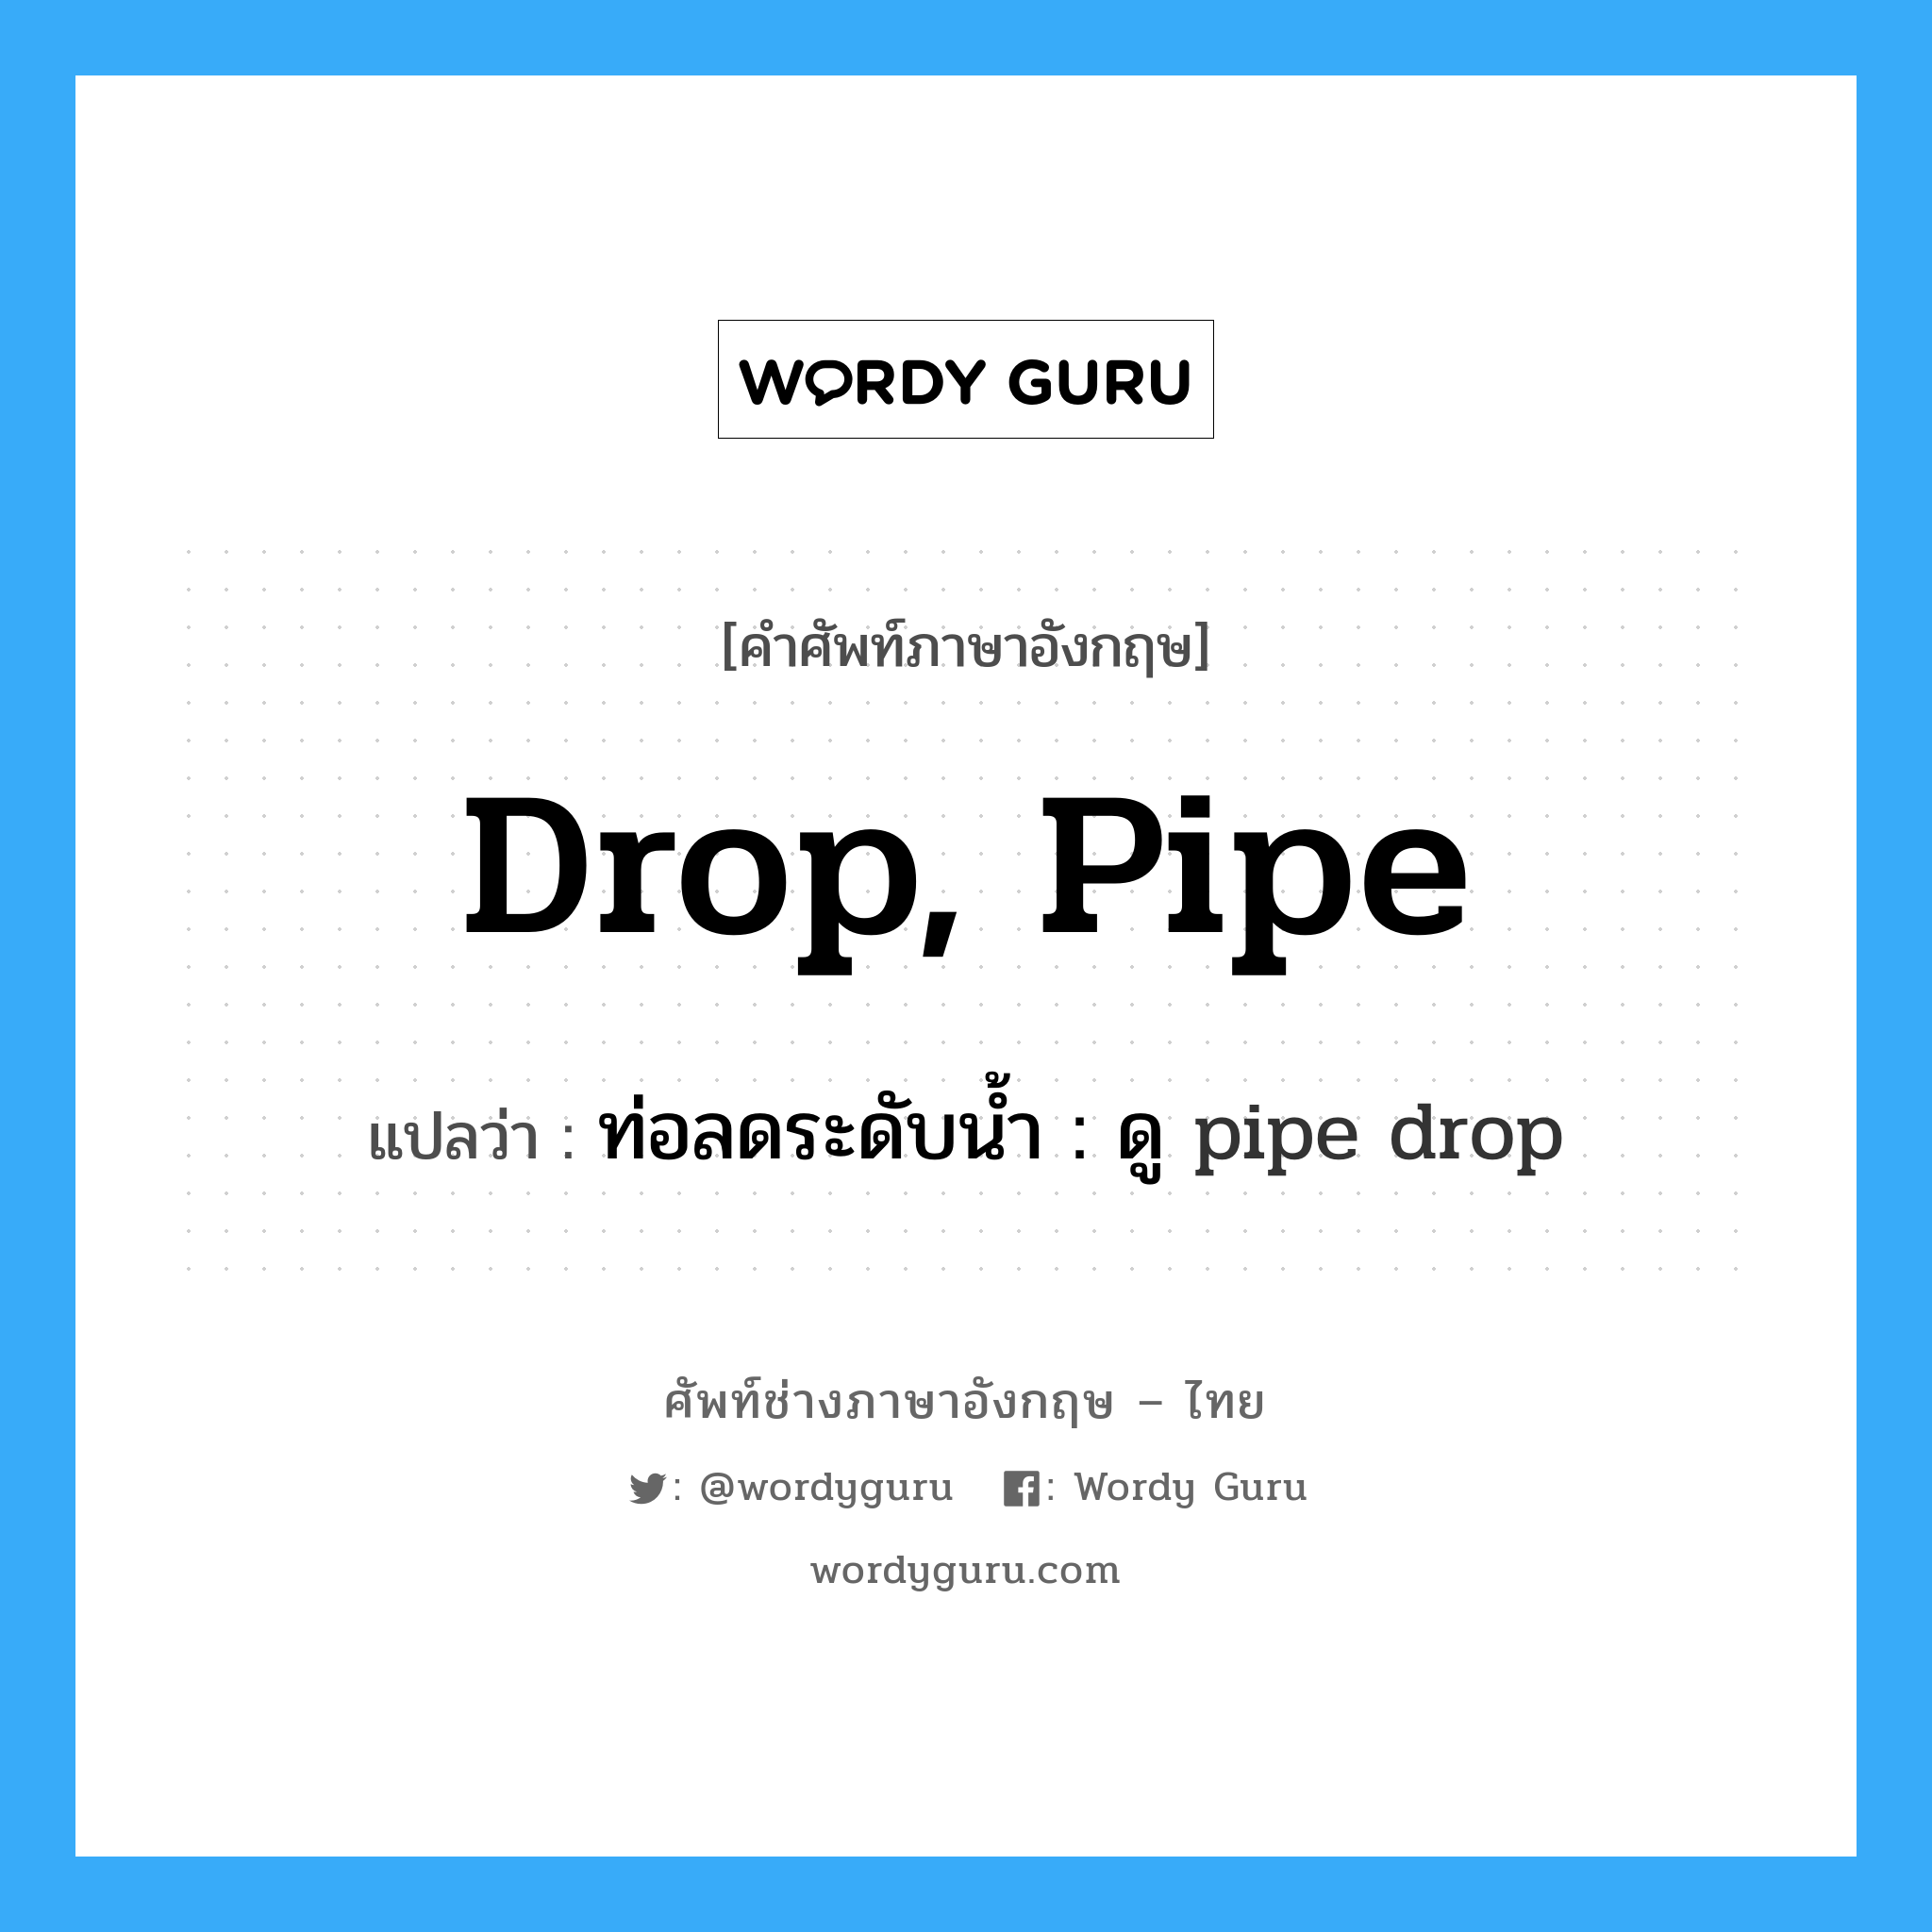 ท่อลดระดับน้ำ : ดู pipe drop ภาษาอังกฤษ?, คำศัพท์ช่างภาษาอังกฤษ - ไทย ท่อลดระดับน้ำ : ดู pipe drop คำศัพท์ภาษาอังกฤษ ท่อลดระดับน้ำ : ดู pipe drop แปลว่า drop, pipe